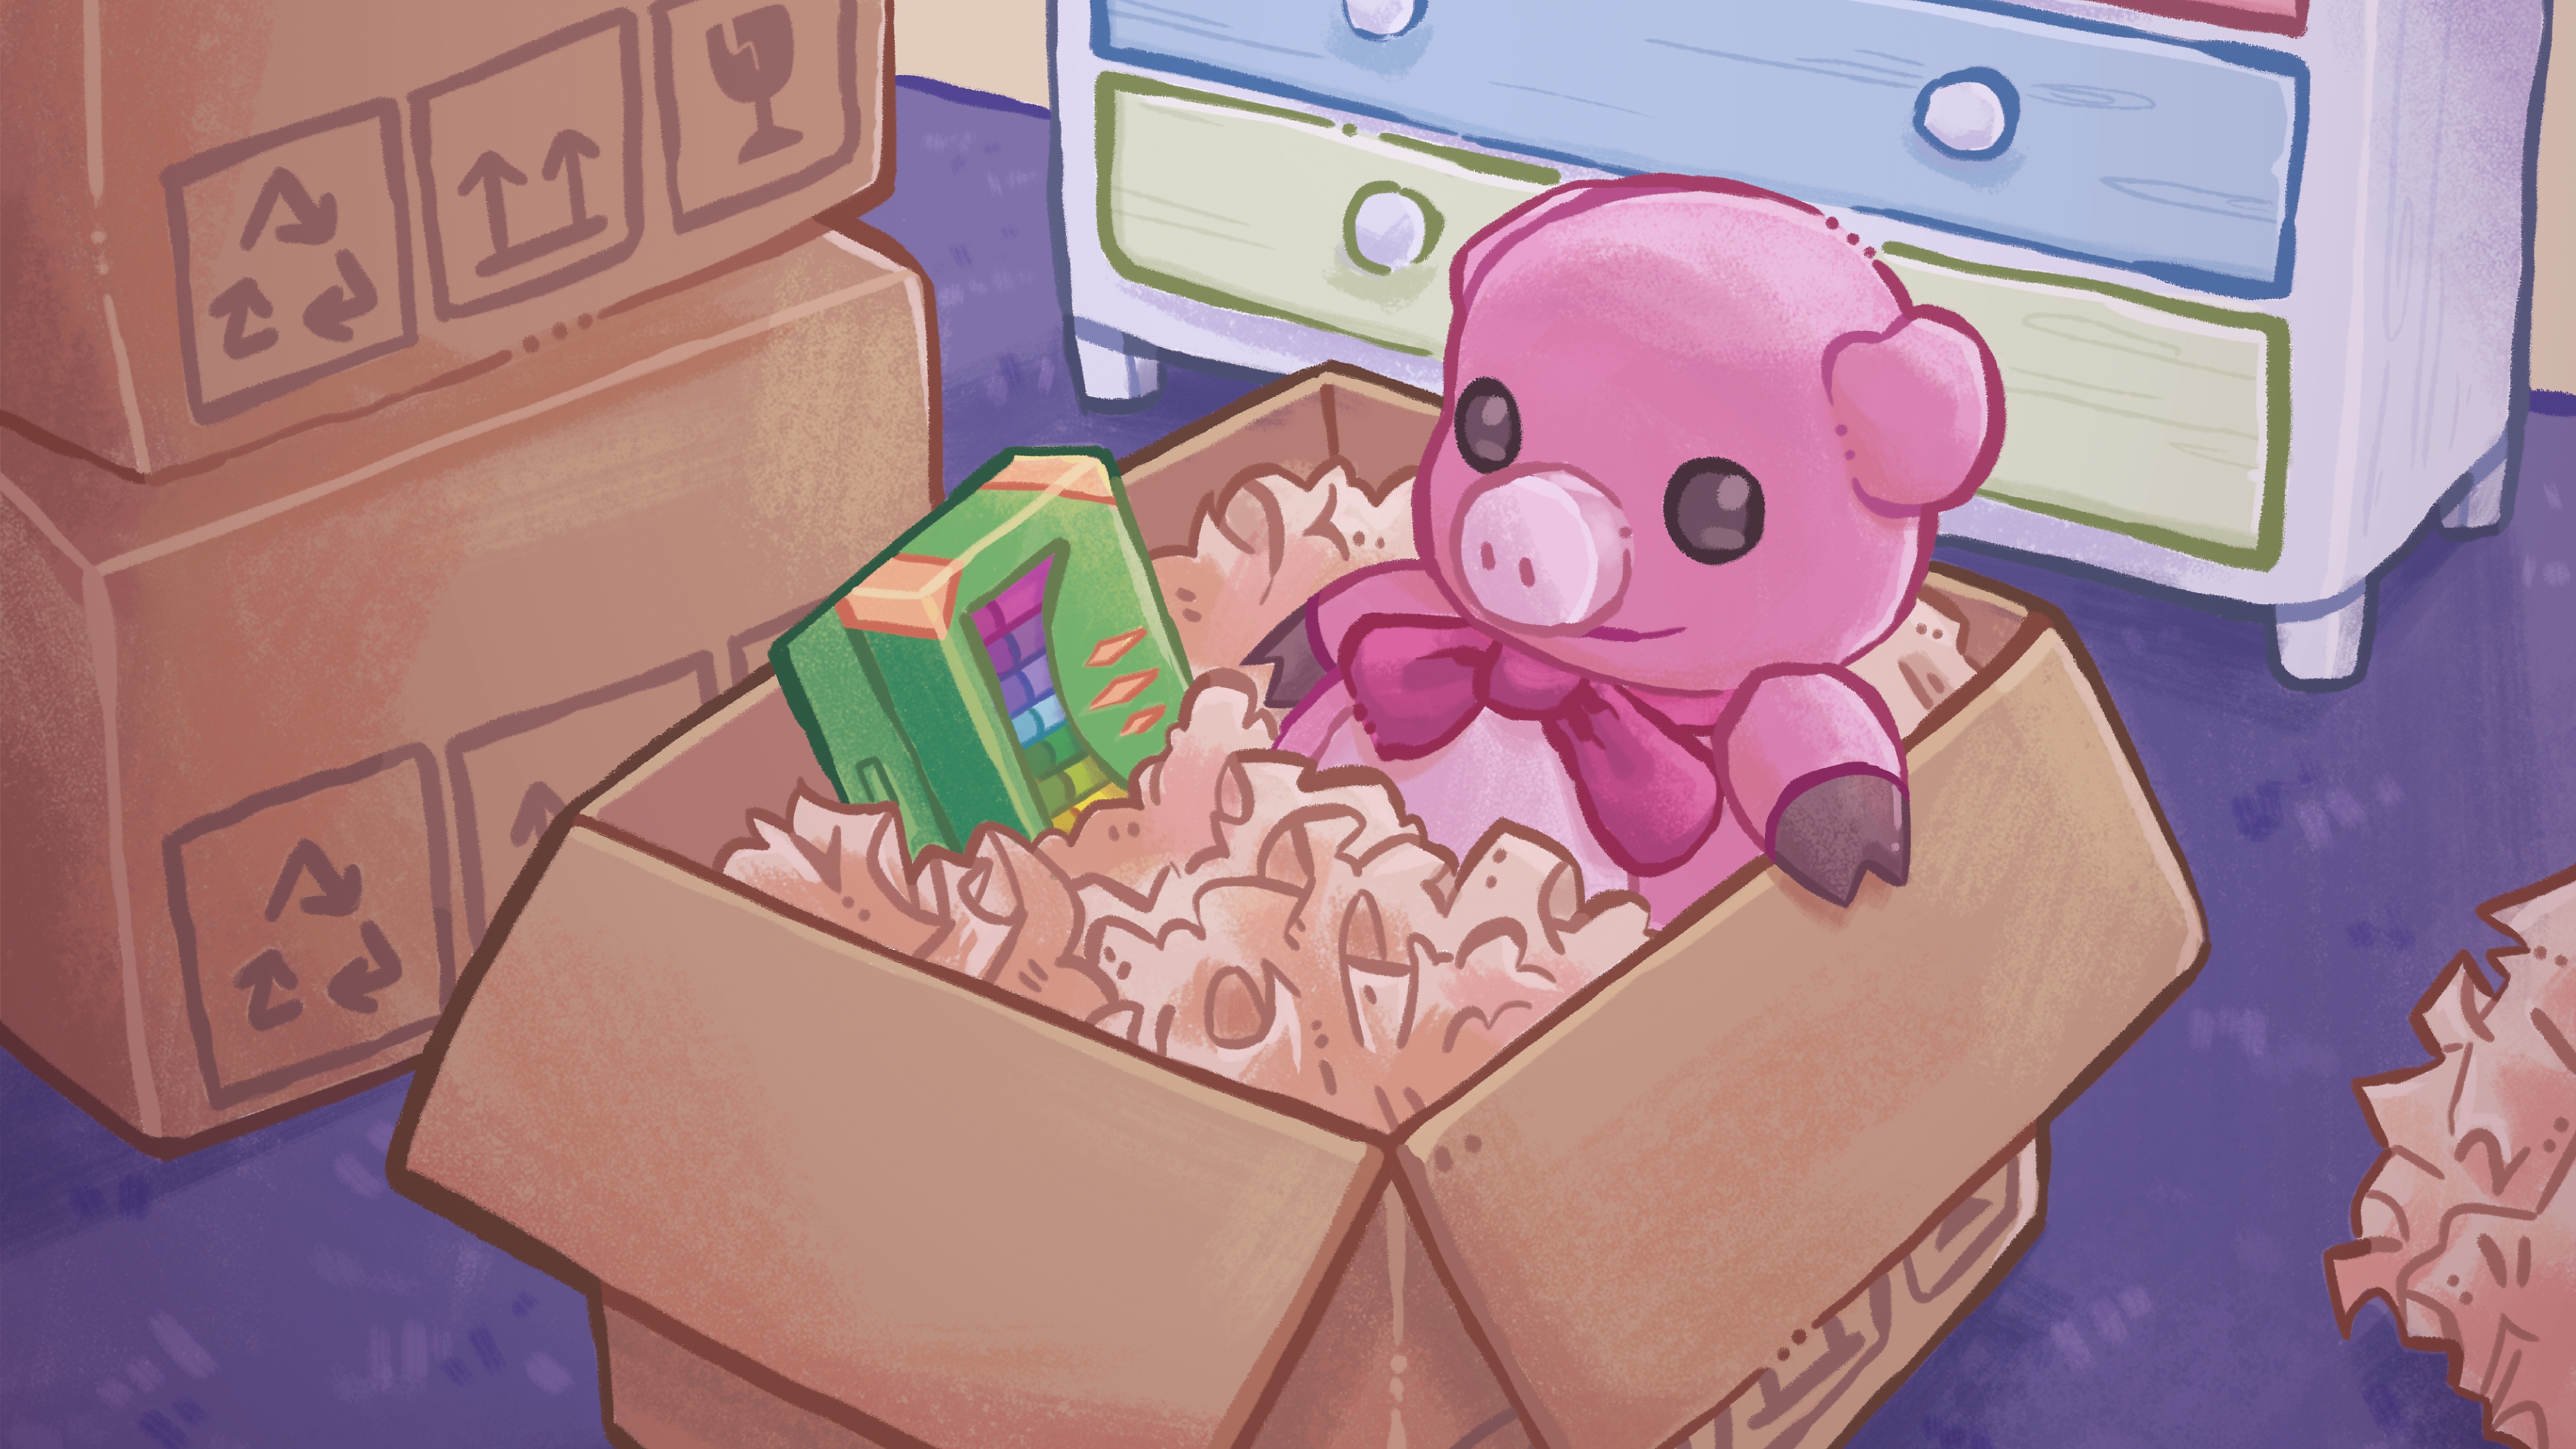 Arte principal de Unpacking mostrando uma ilustração desenhada à mão de um ursinho e uma caixa de giz dentro de uma caixa de papelão.